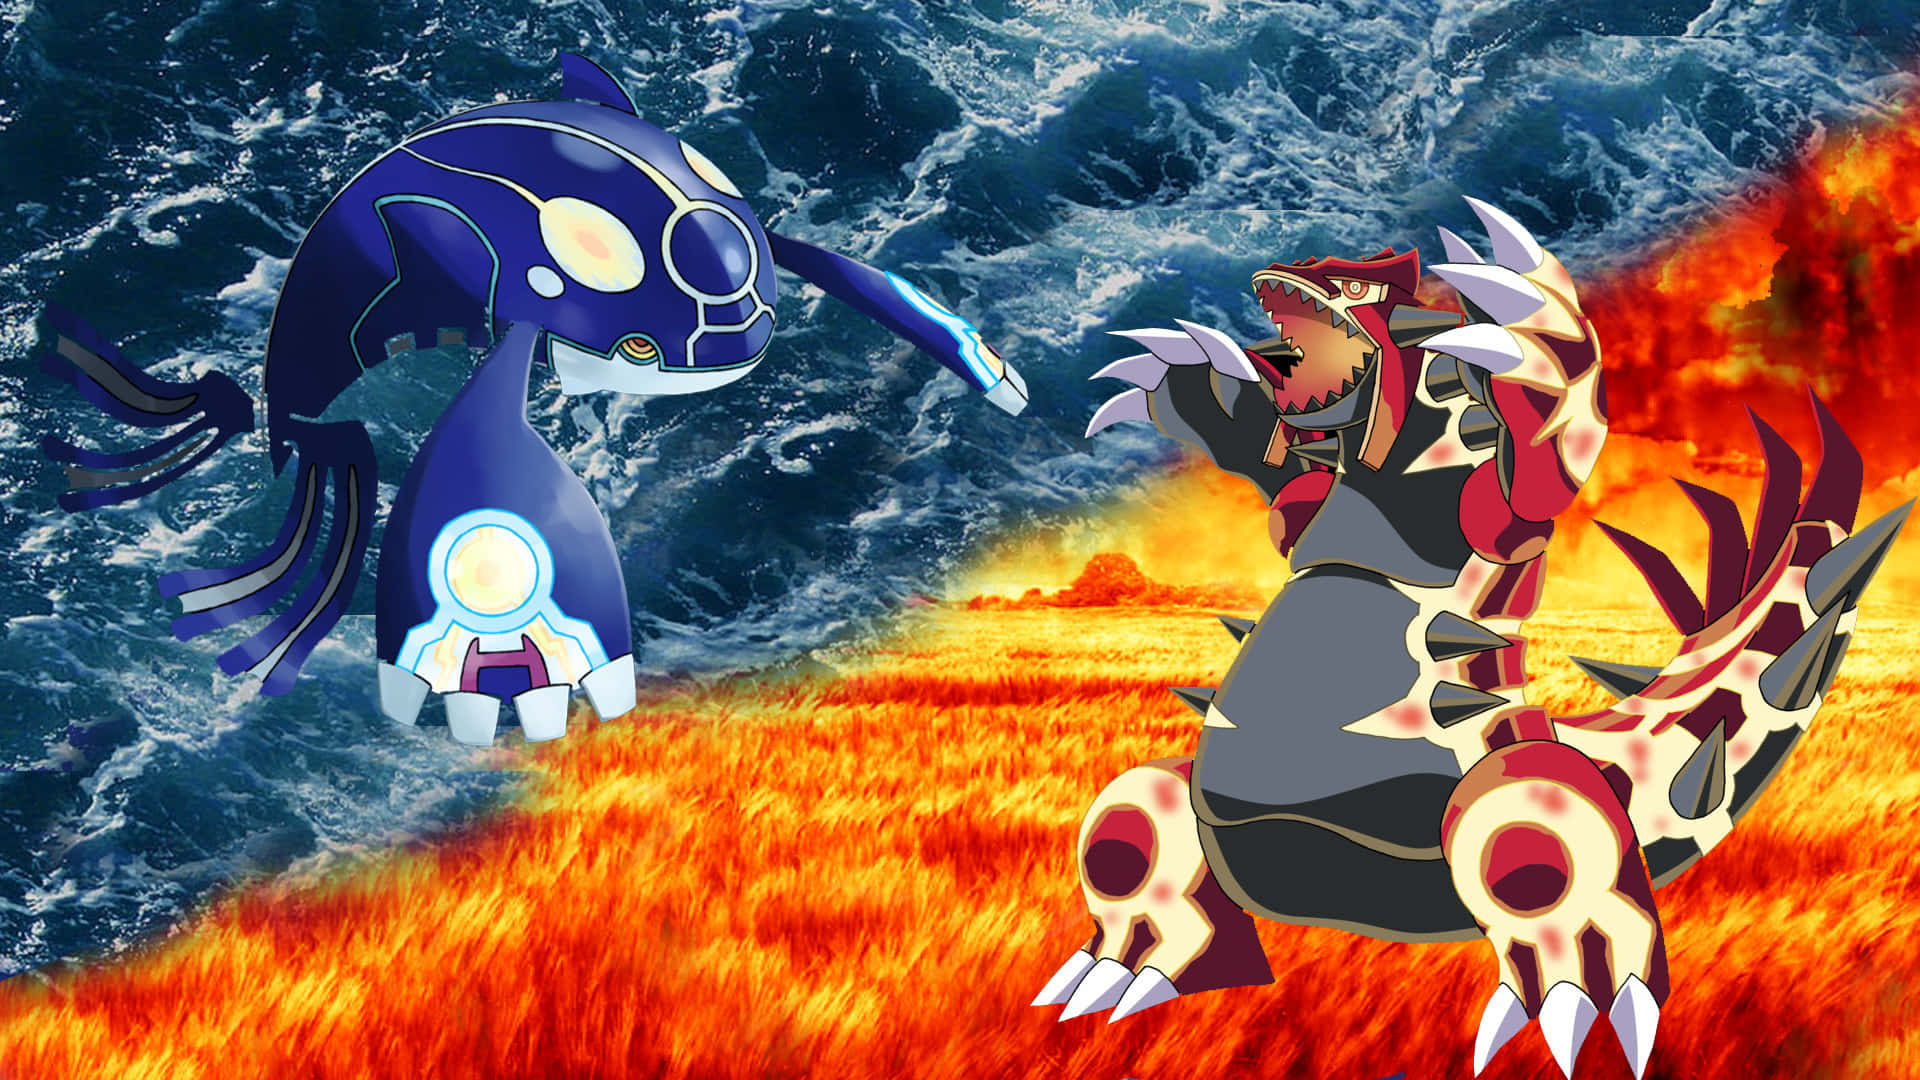 Fondode Pantalla De Batalla De Pokémon Omega Ruby Y Alpha Sapphire.